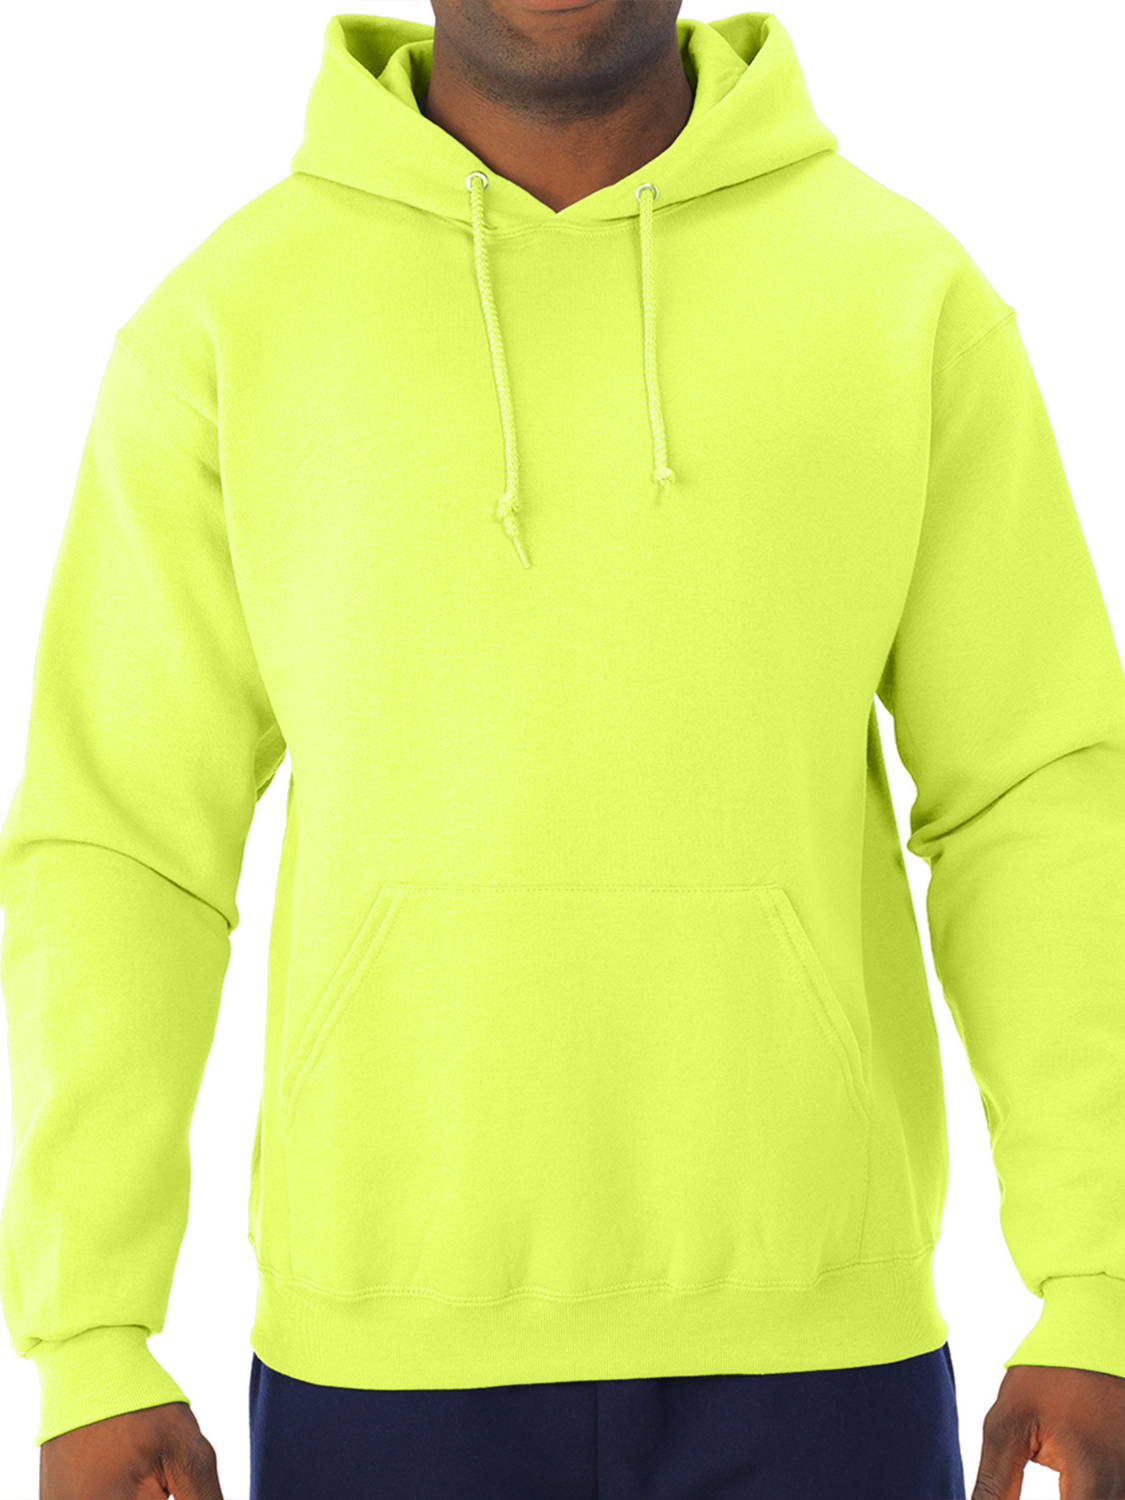 Jerzees Men's and Big Men's Fleece Hoodie Sweatshirt - image 1 of 5